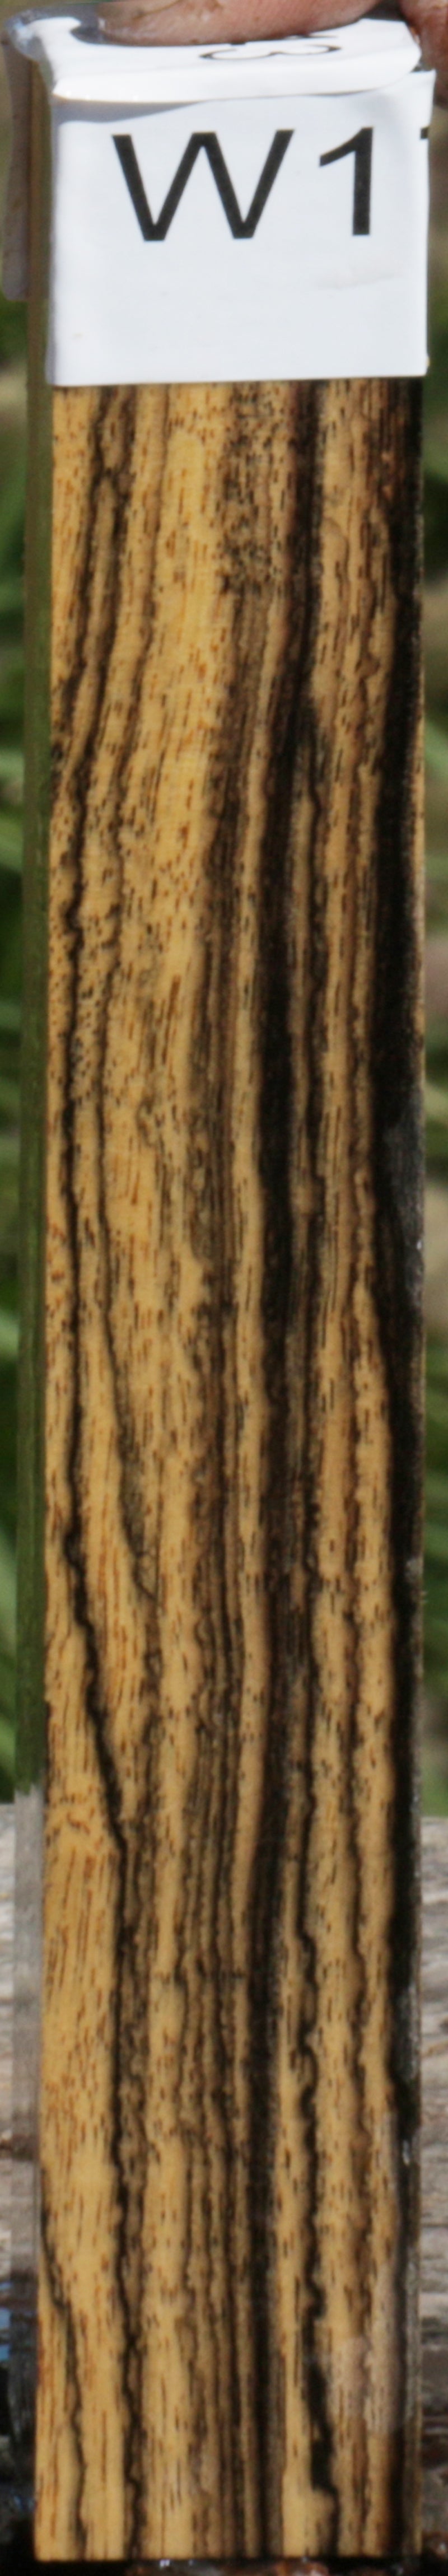 Black and White Ebony Lumber